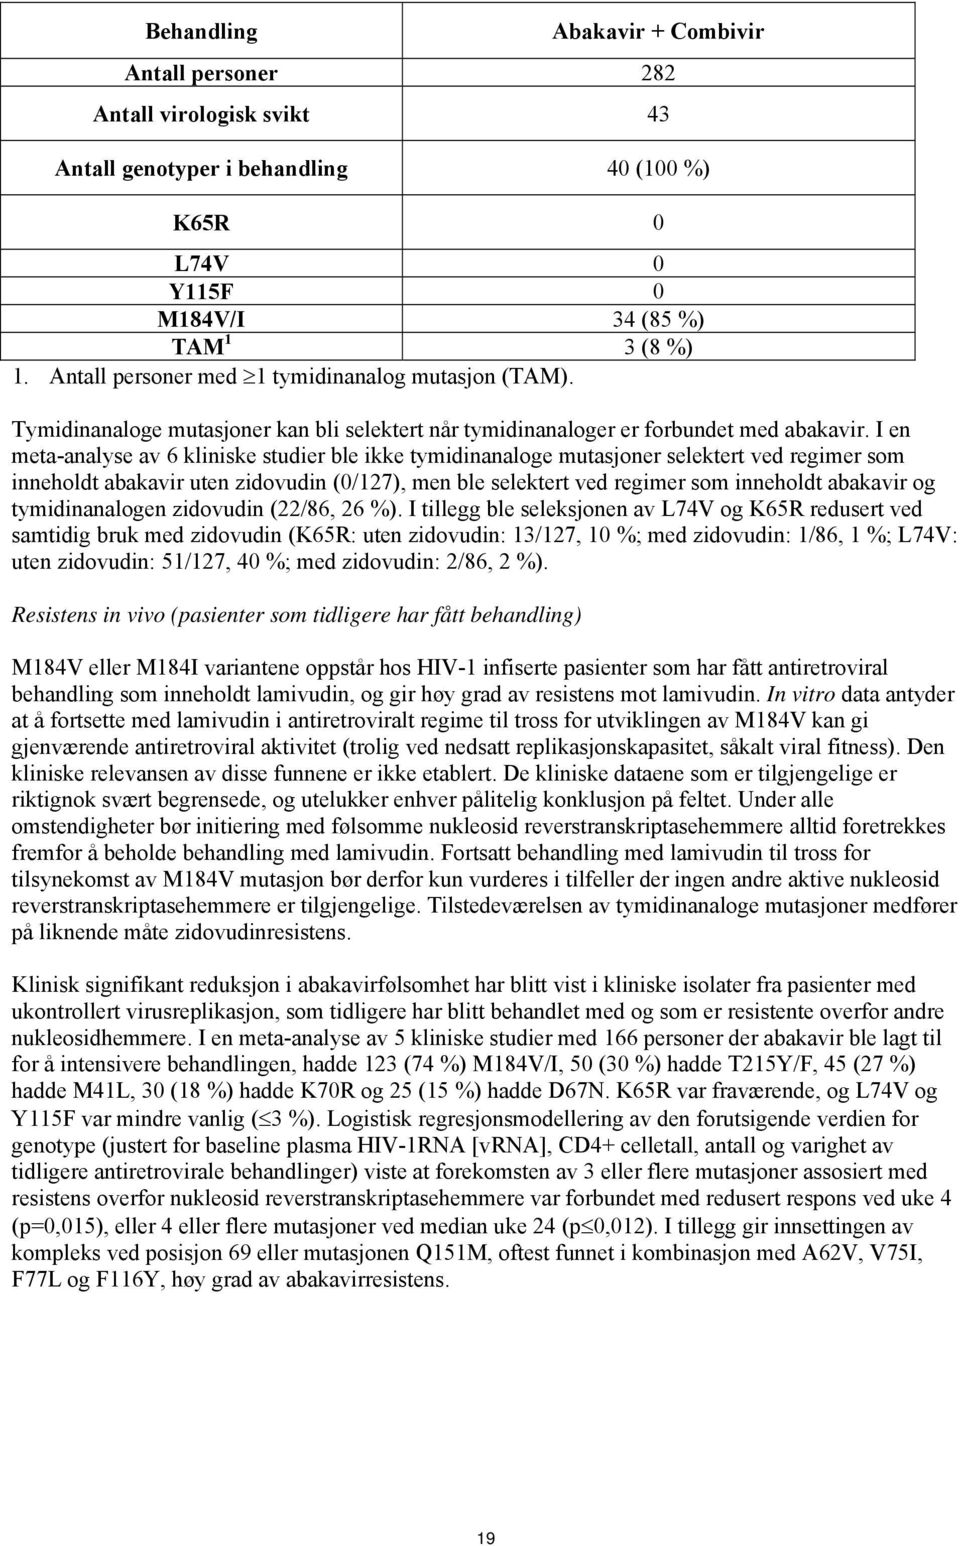 I en meta-analyse av 6 kliniske studier ble ikke tymidinanaloge mutasjoner selektert ved regimer som inneholdt abakavir uten zidovudin (0/127), men ble selektert ved regimer som inneholdt abakavir og